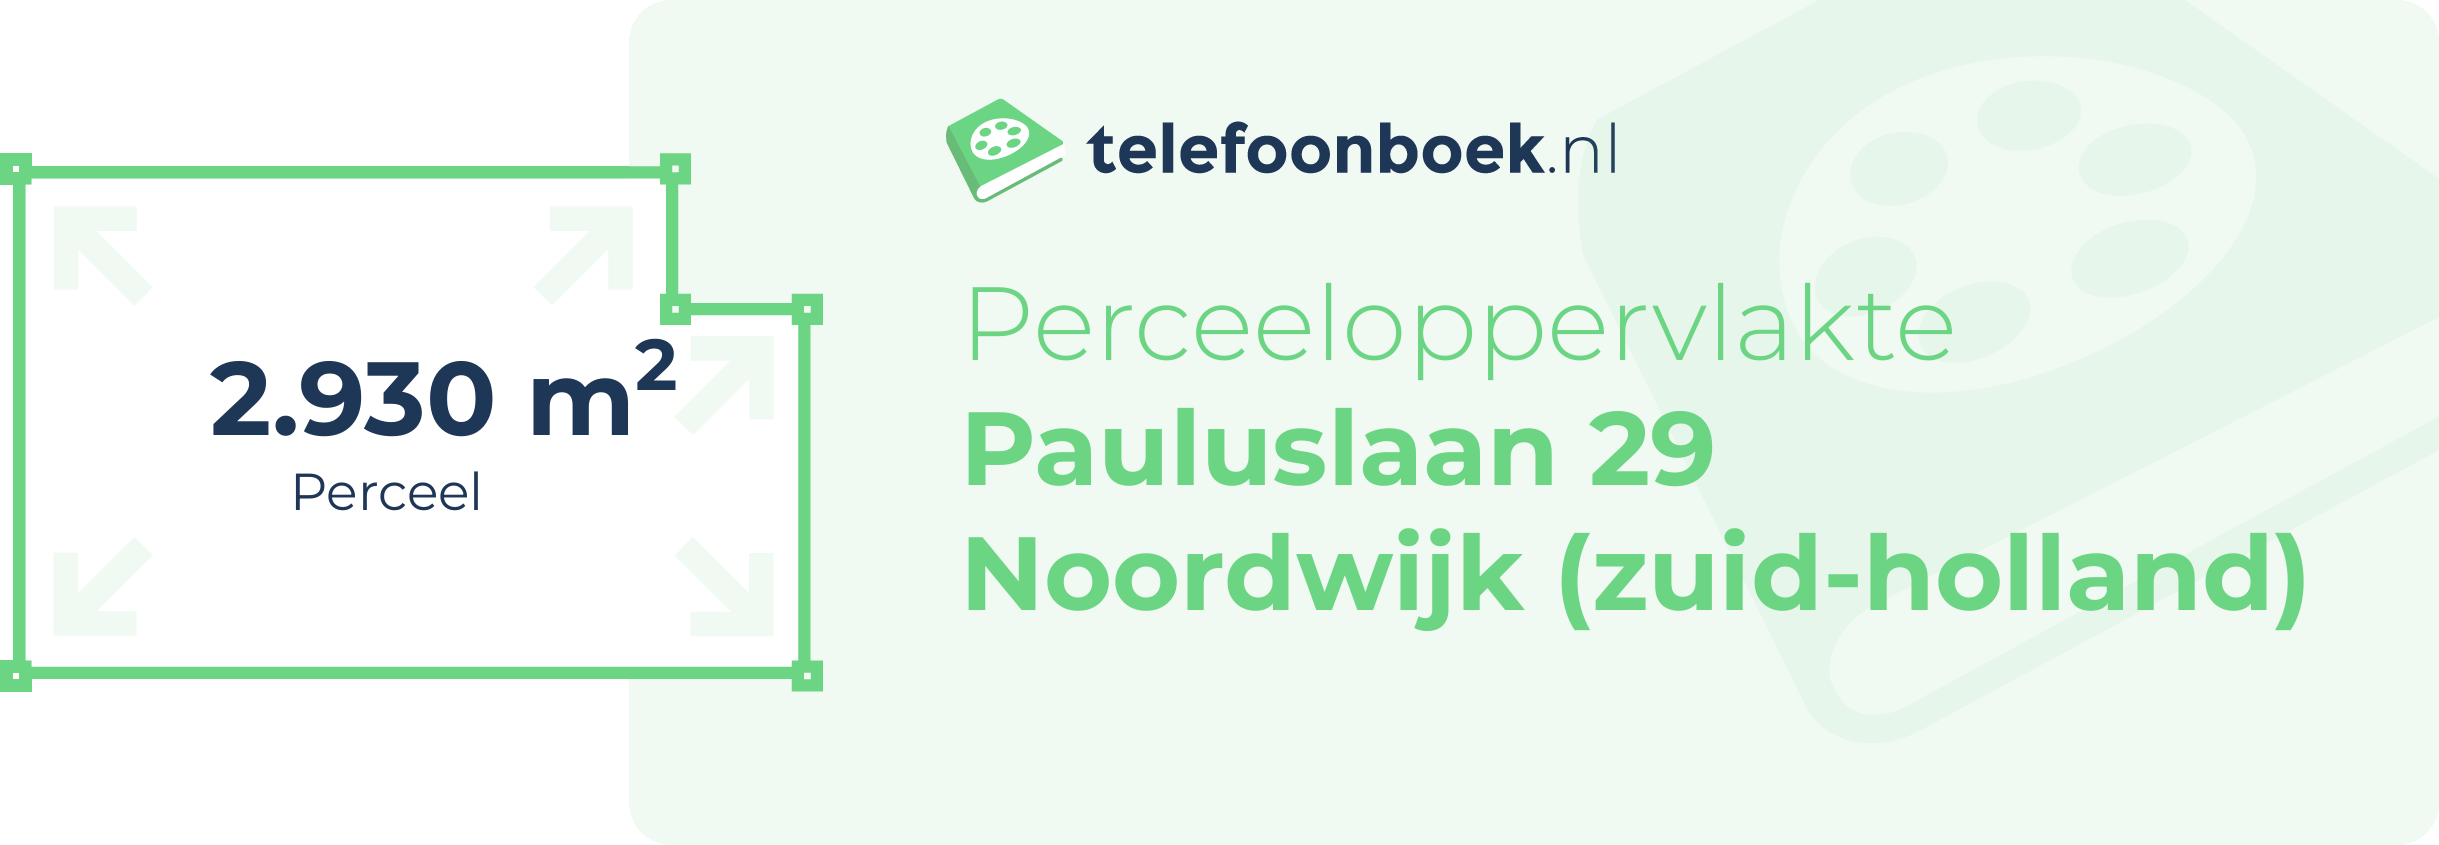 Perceeloppervlakte Pauluslaan 29 Noordwijk (Zuid-Holland)